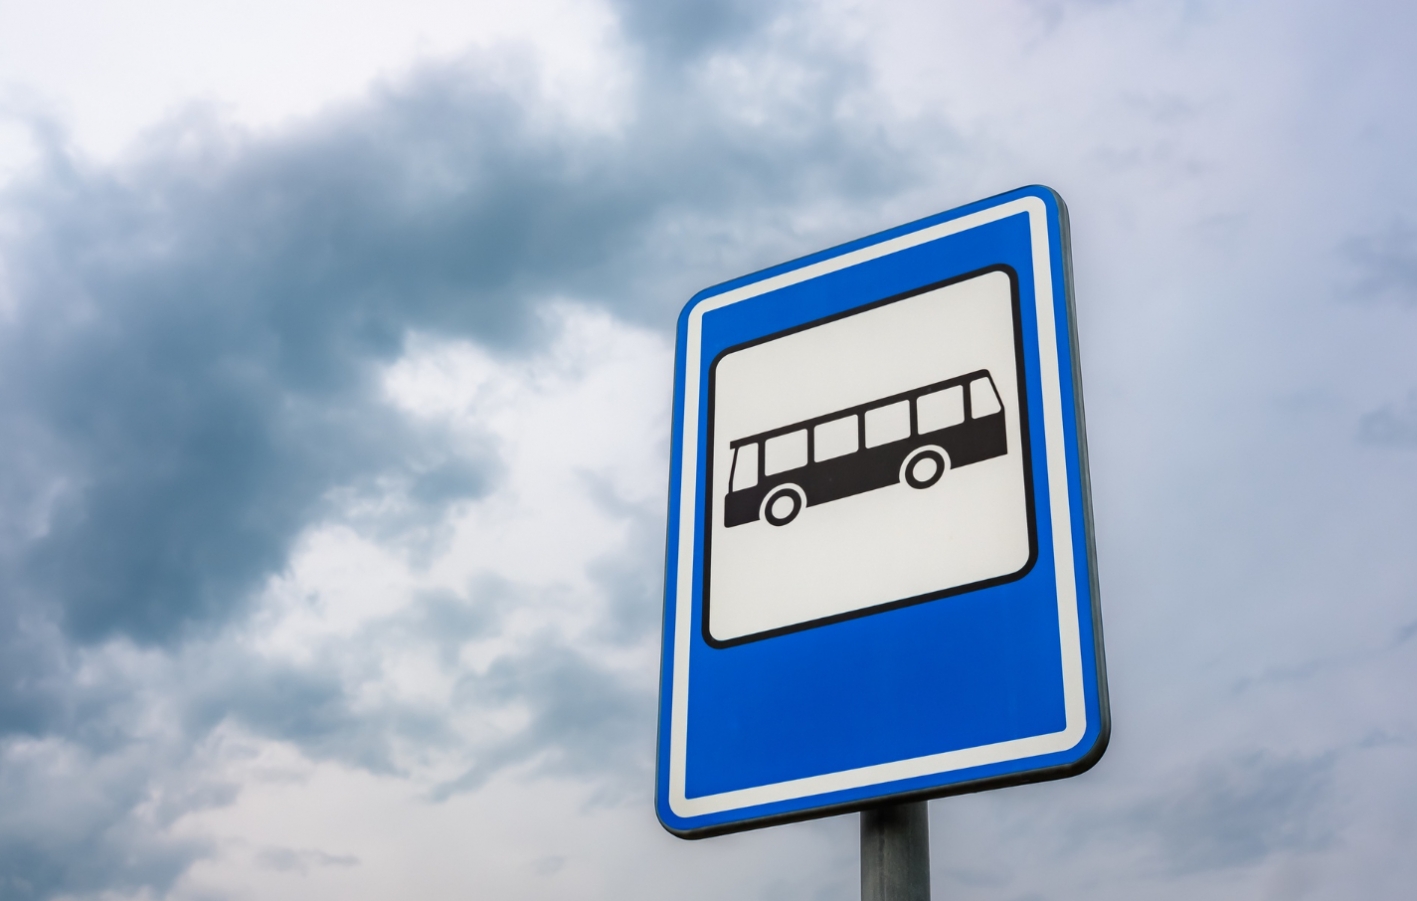 Miasto Ełk postawiło na transport ekologiczny: elektryczne autobusy zastępują starsze jednostki spalinowe